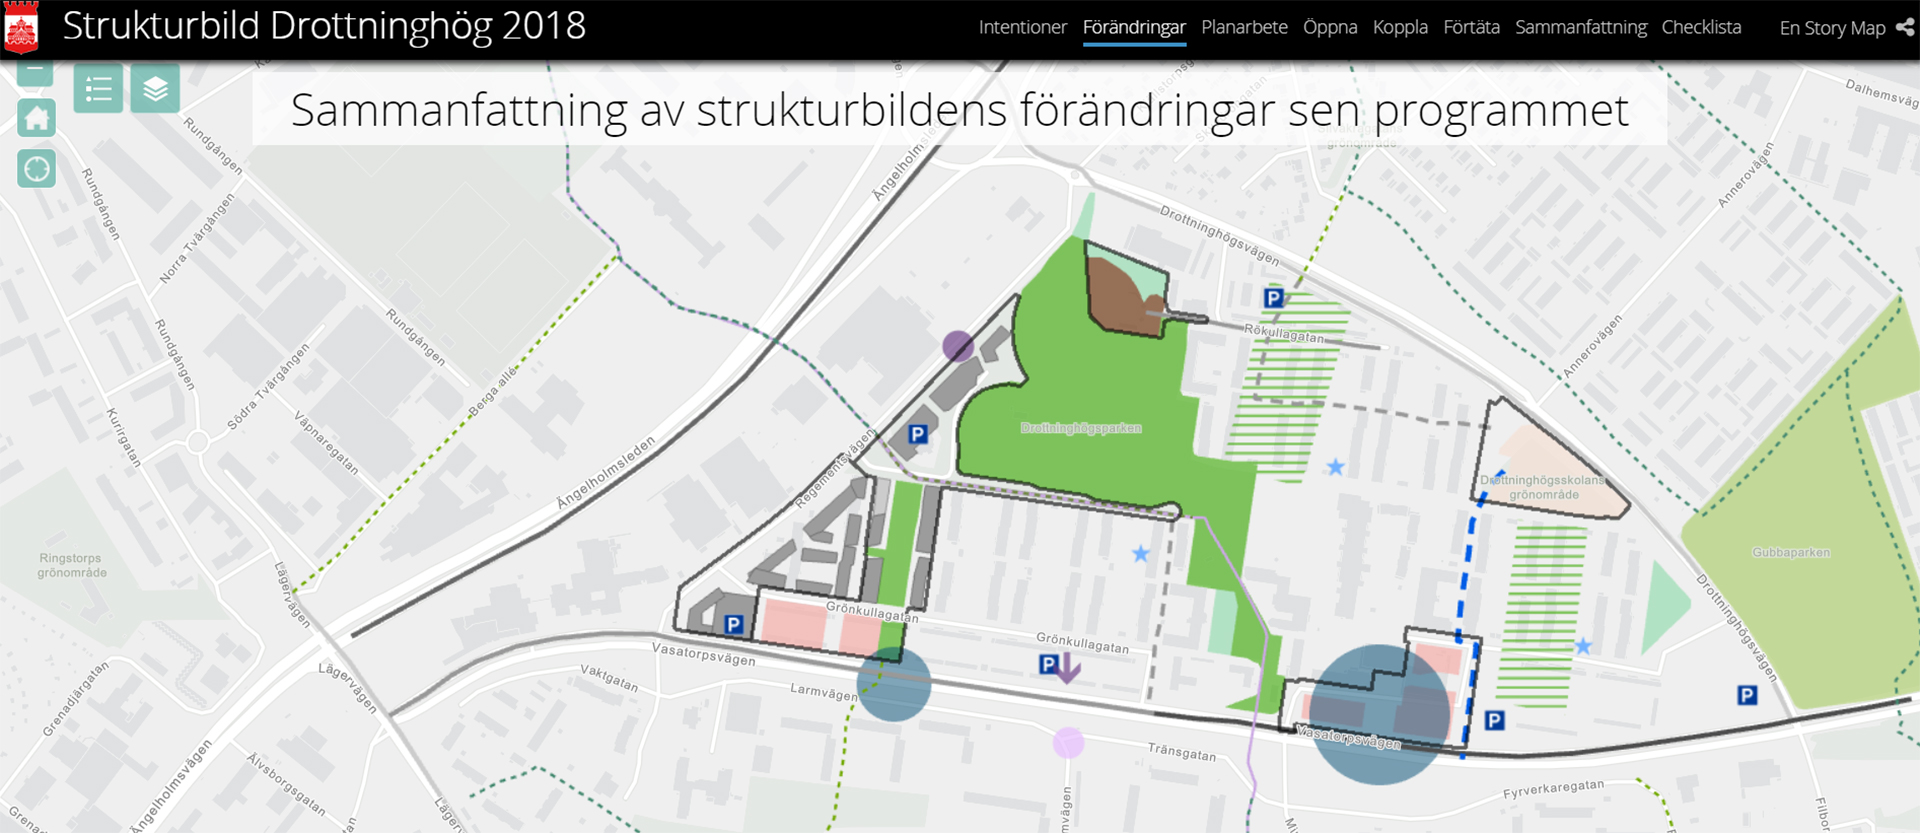 Till digital storymap av Strukturbild Drottninghög 2018